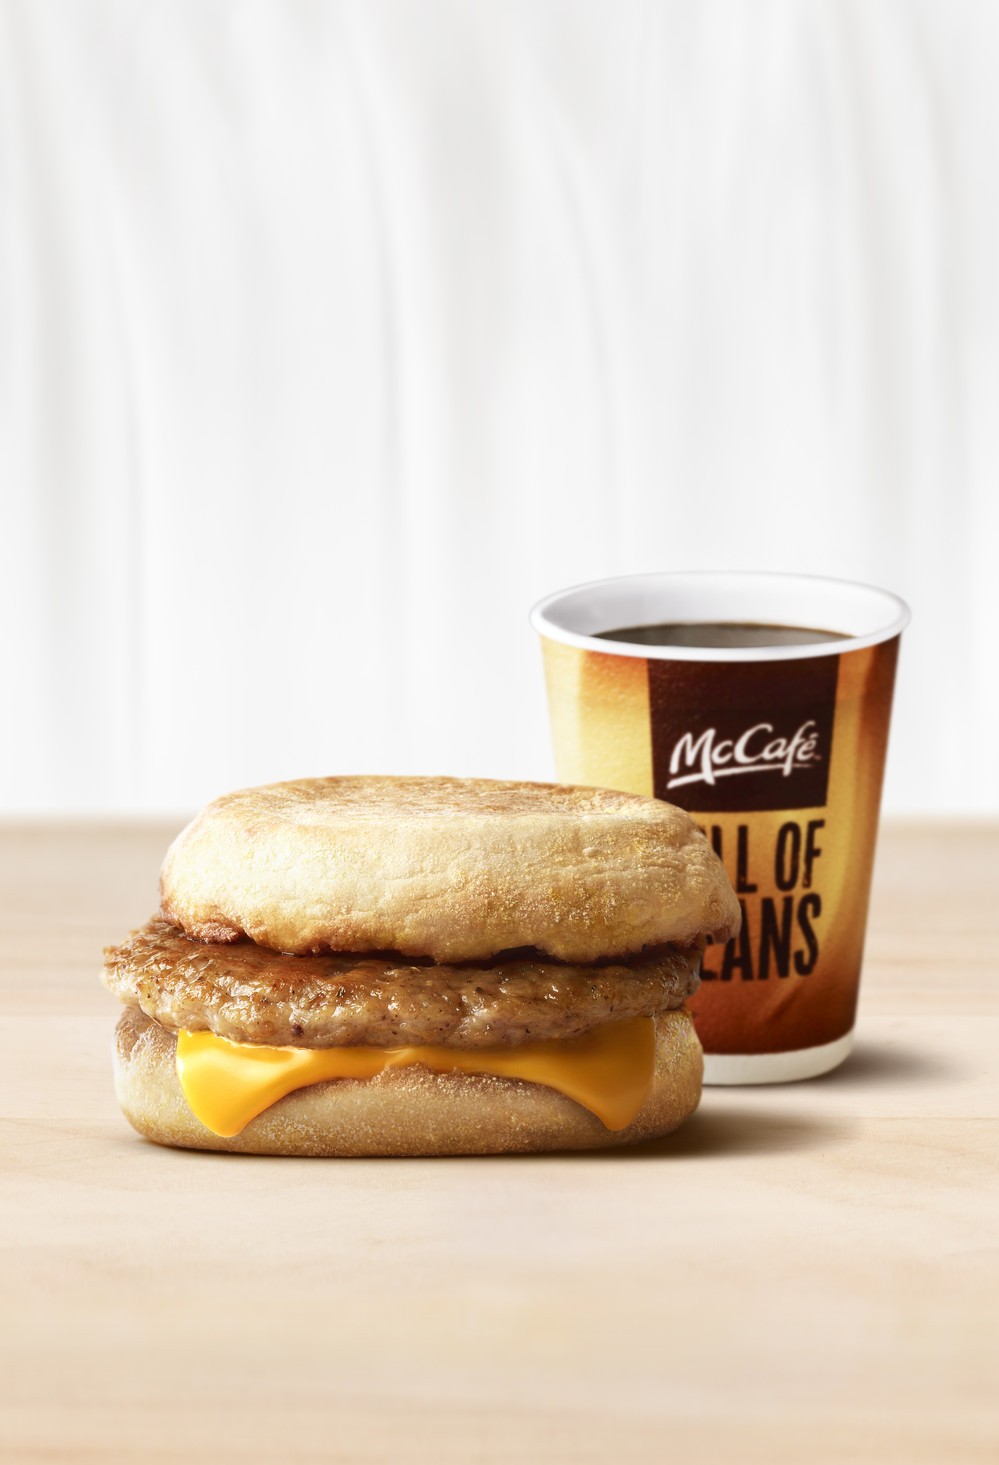 会社員が「朝の外食」に求めるのは「手軽さ、あたたかさ、300円以内」　マクドナルドの実態調査で明らかに